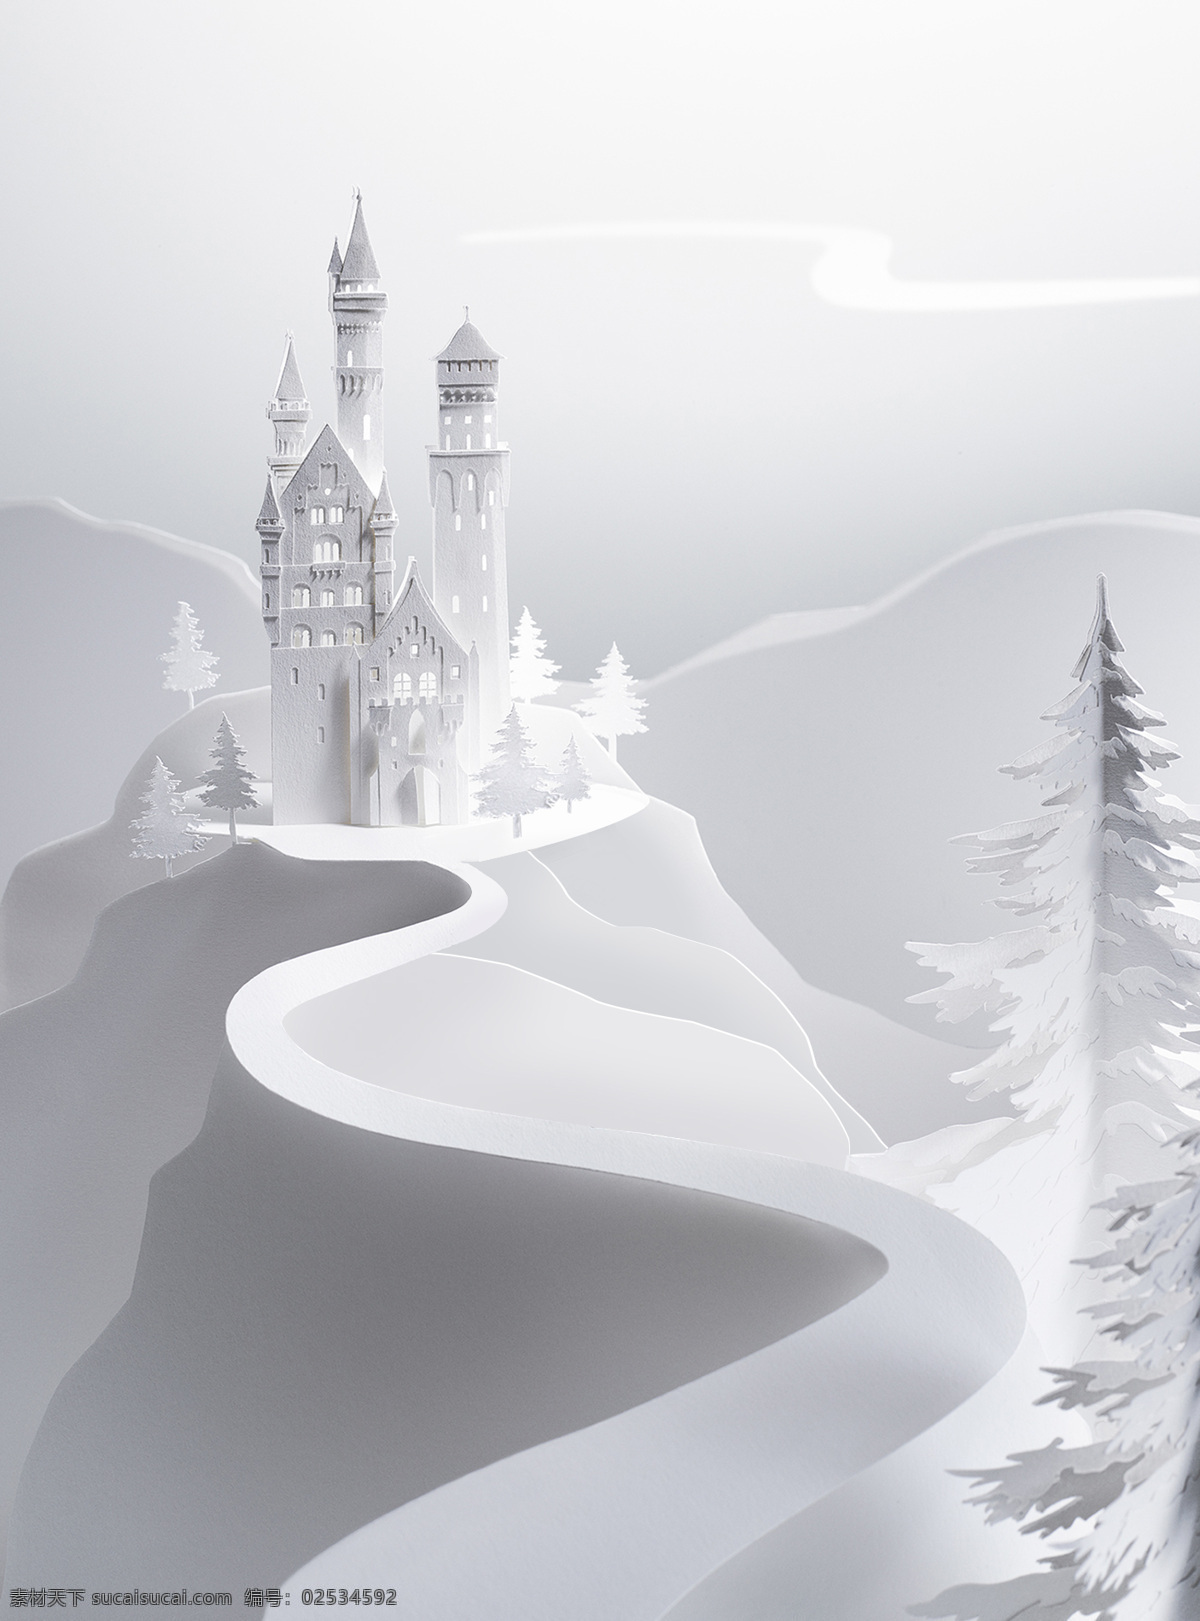 纸雕艺术城堡 纸雕 剪纸 白纸 折纸 城堡 童话 儿童 梦幻 模型 3d 白雪 创意图片